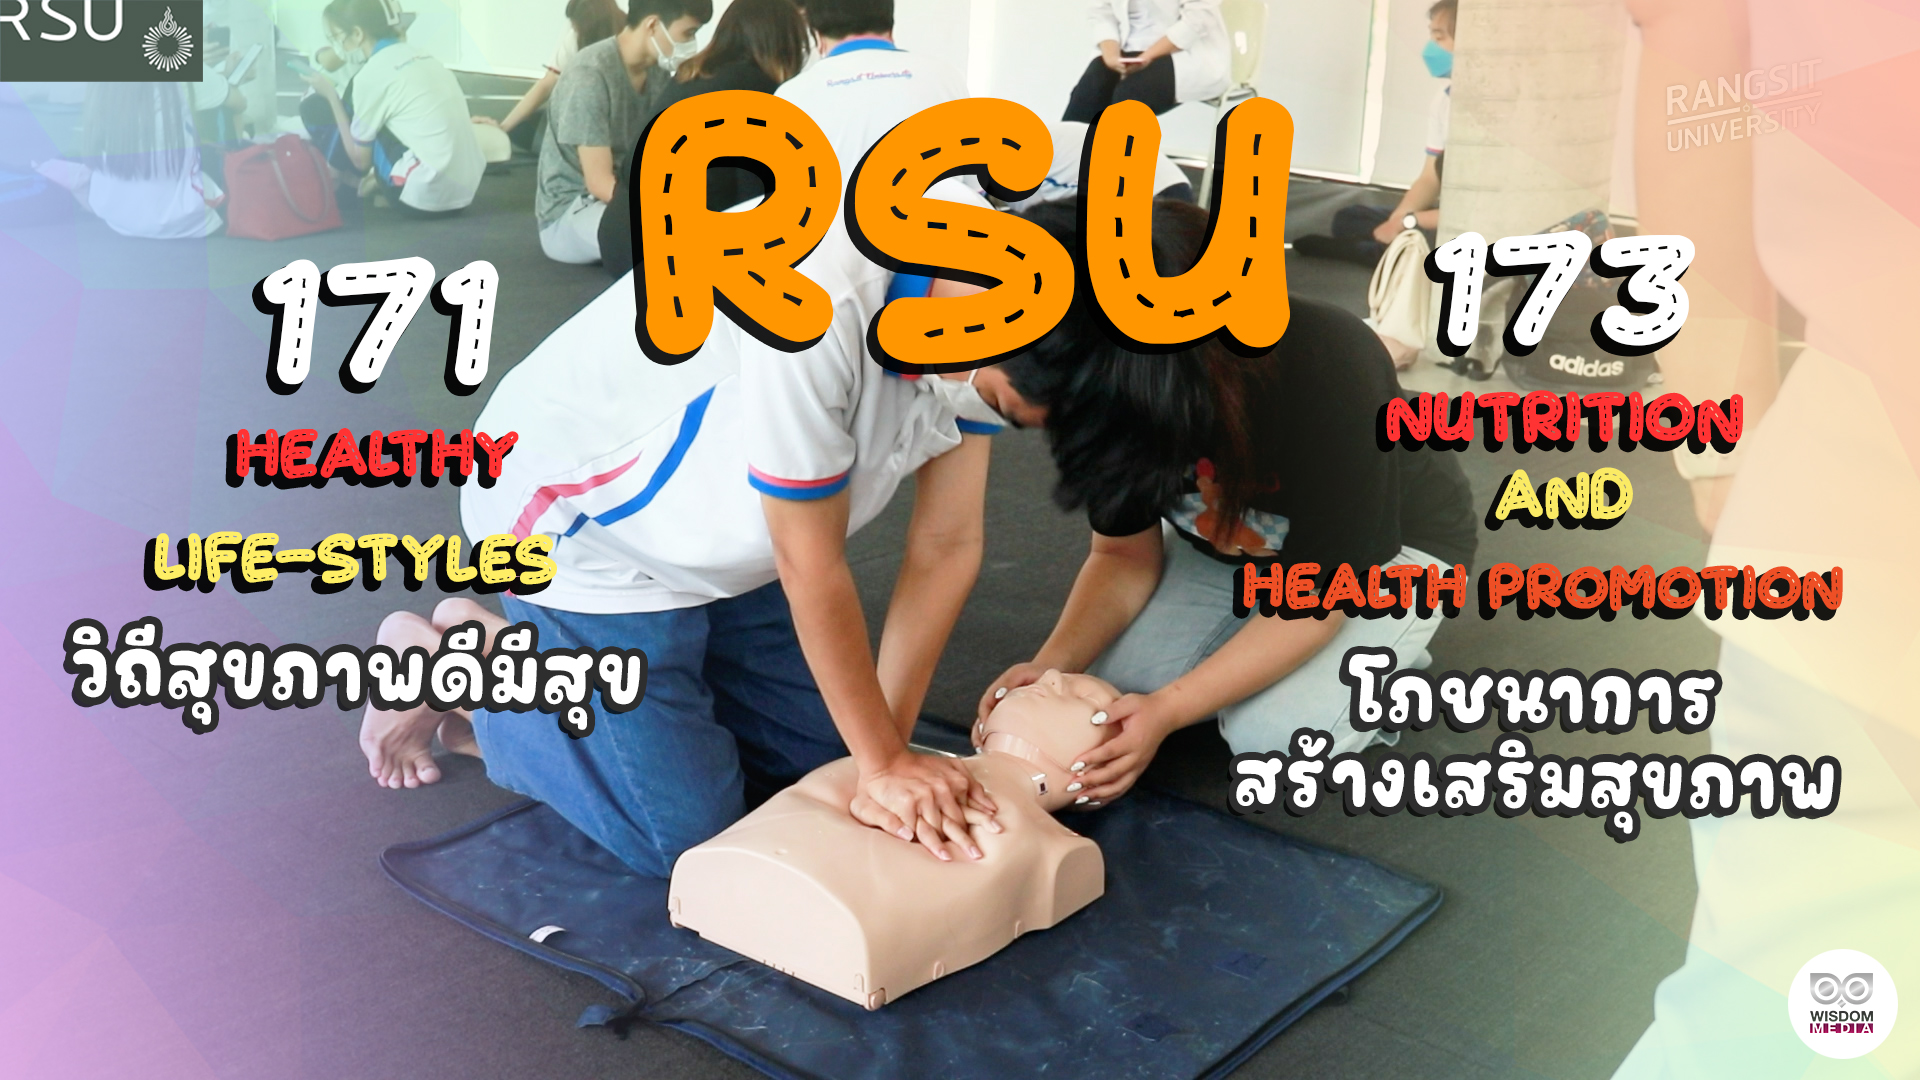 ม.รังสิต สอนการเรียนรู้การช่วยชีวิตและการปฐมพยาบาลผู้อื่นเบื้องต้น RSU 171 + RSU 173